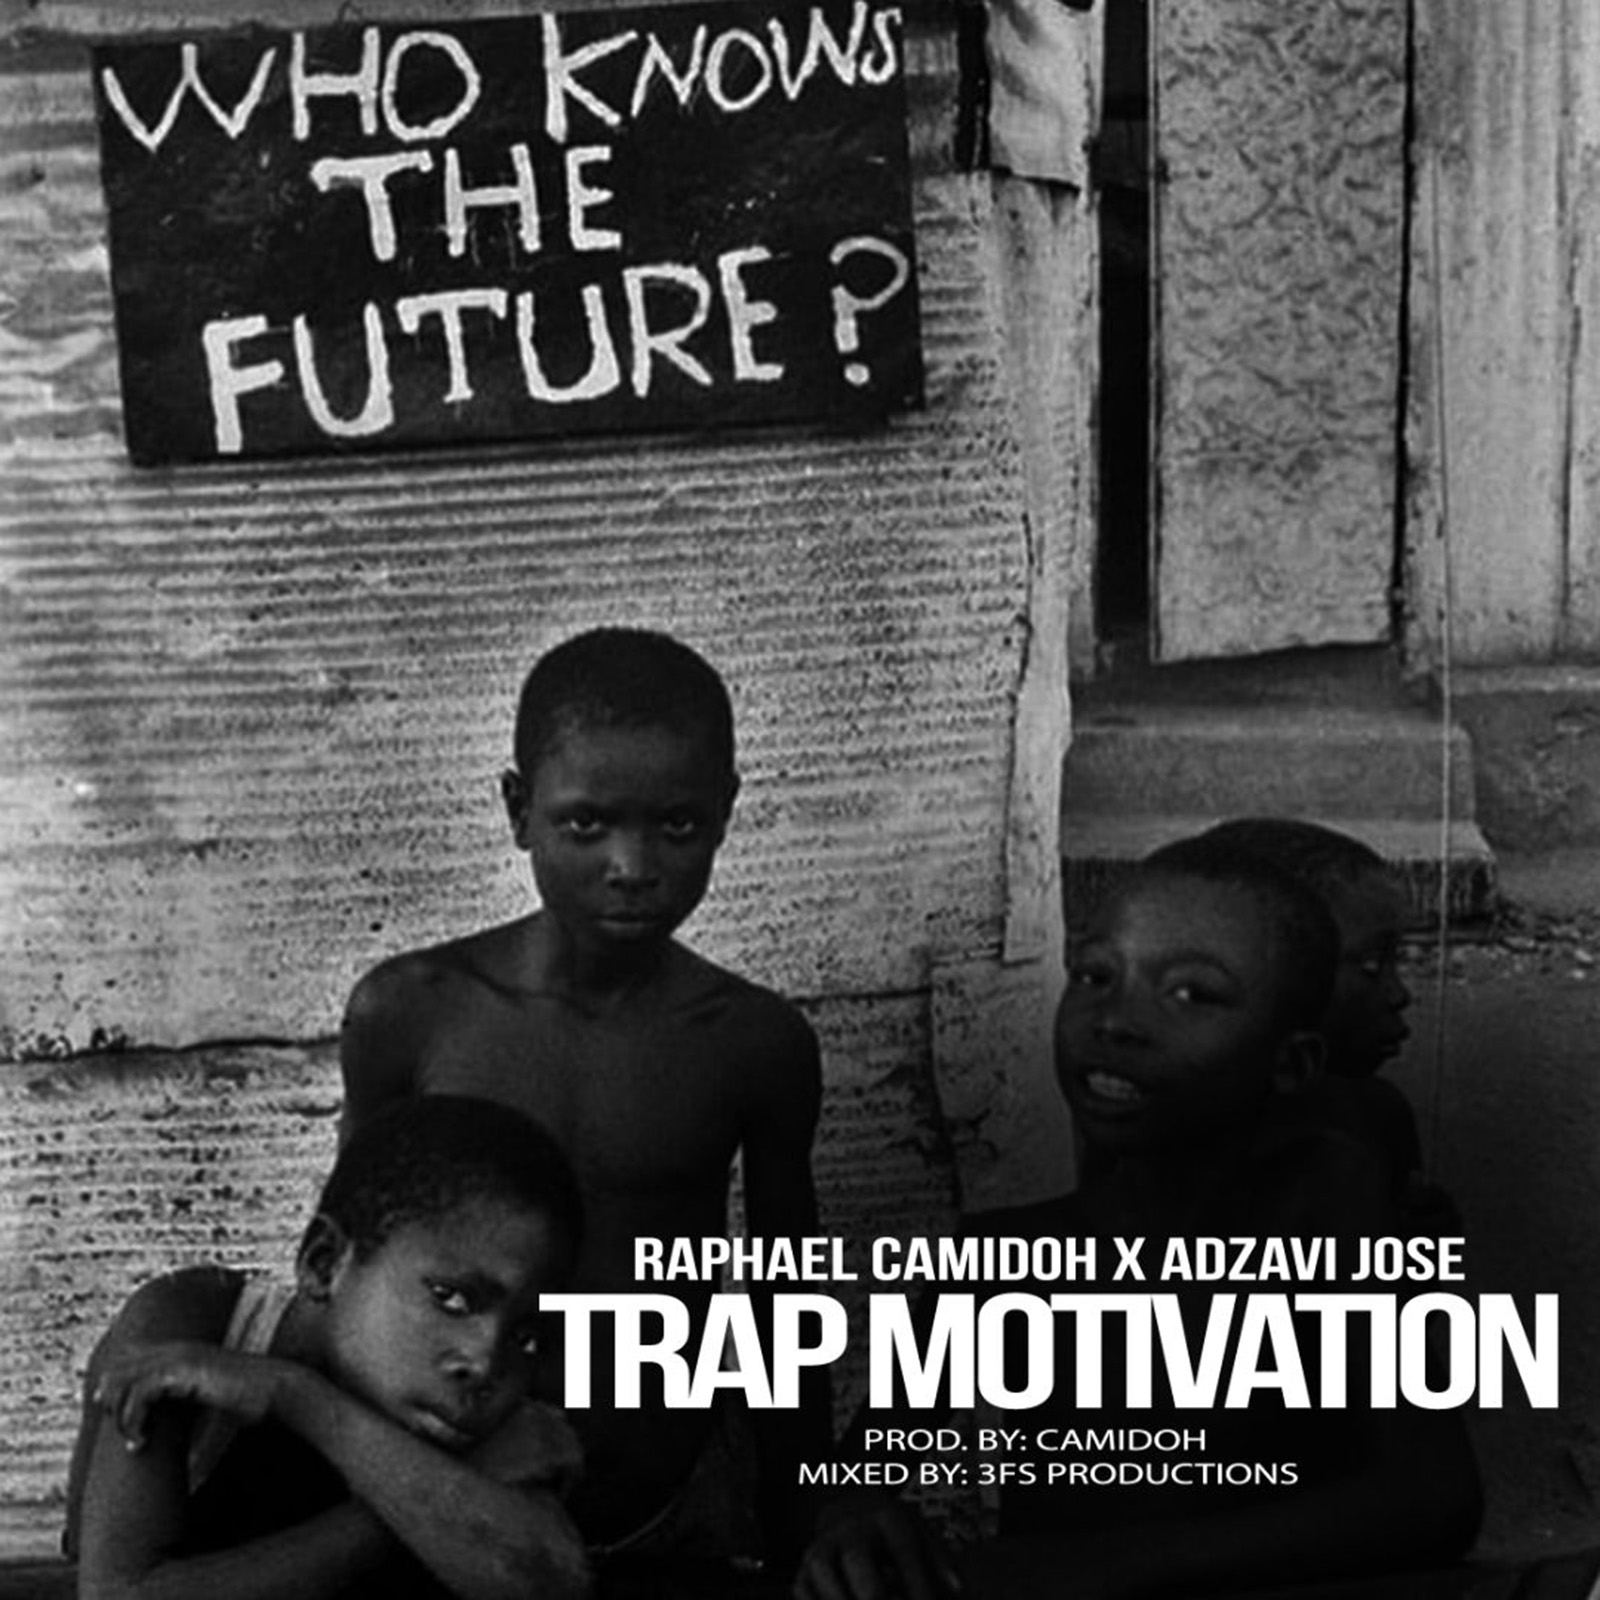 Trap Motivation by Raphael Camidoh & Adzavi Jose